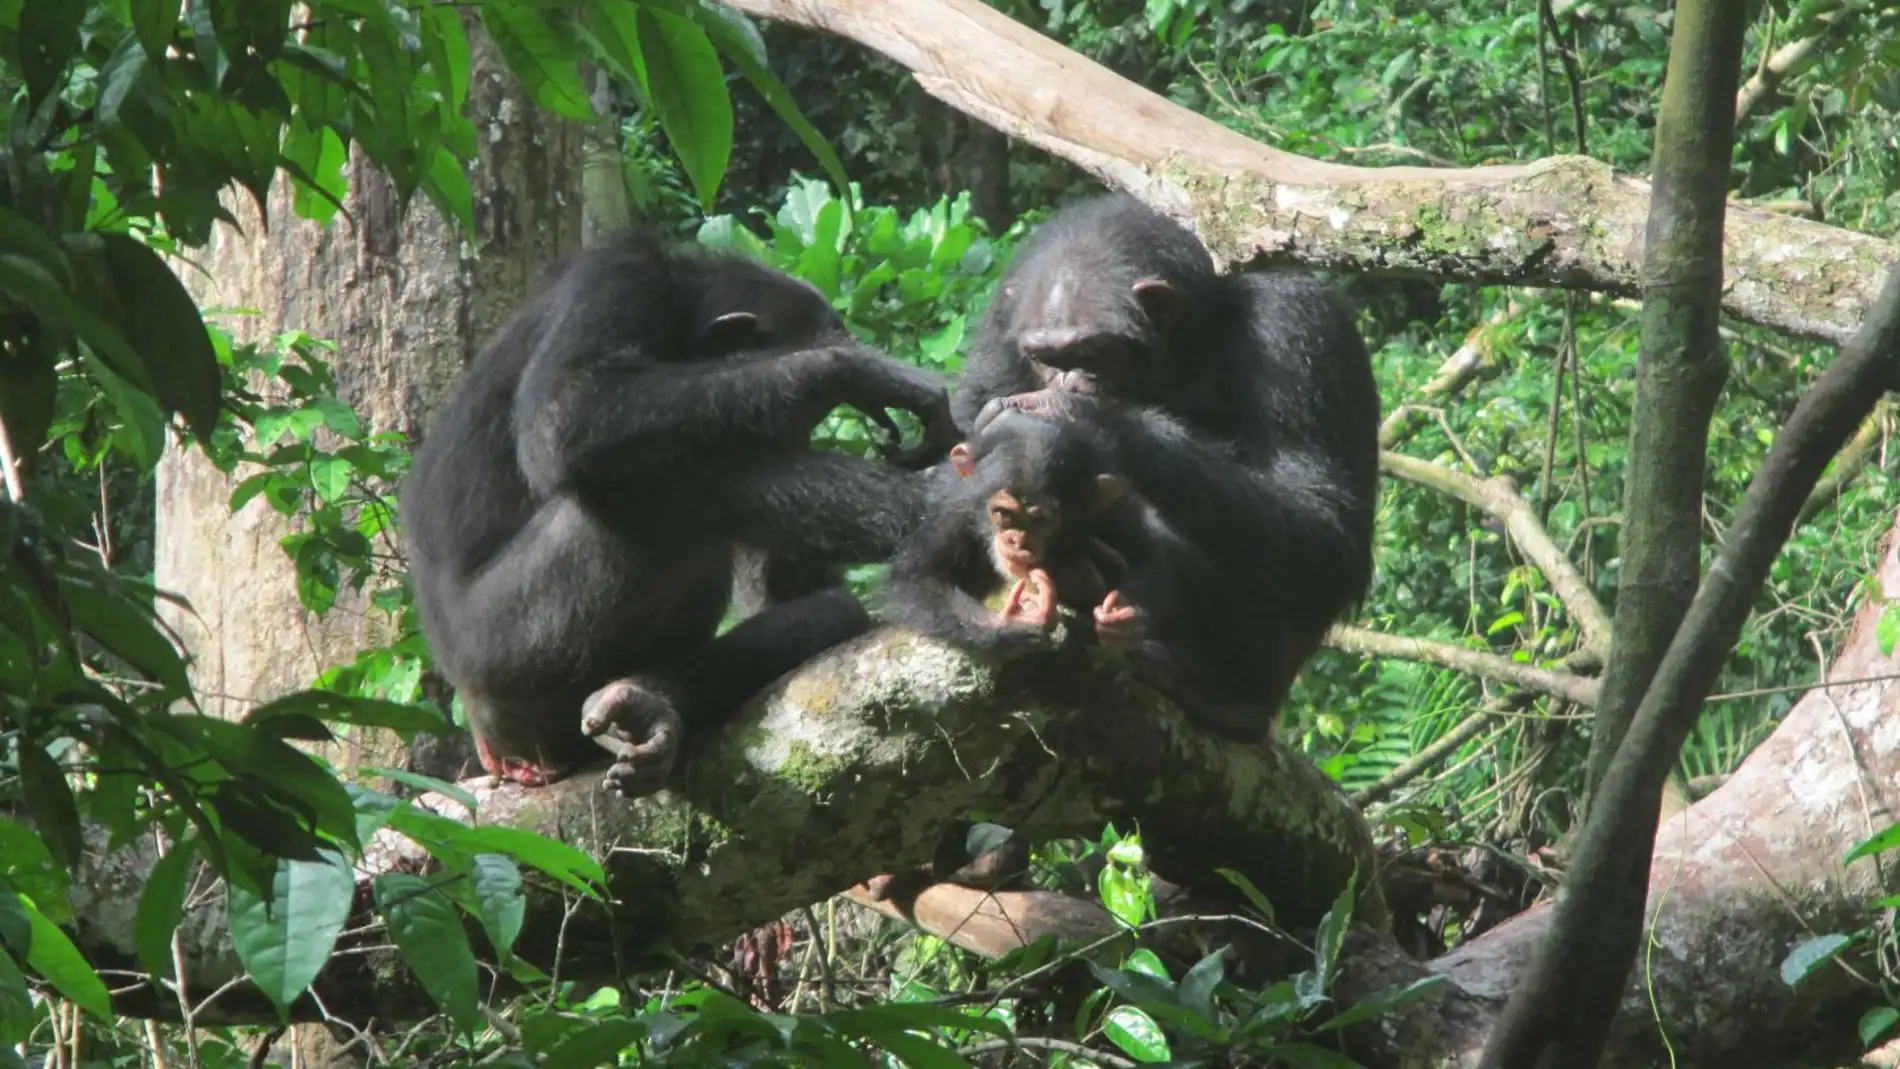 Los primates eligen su companero de aseo dependiendo del contexto social